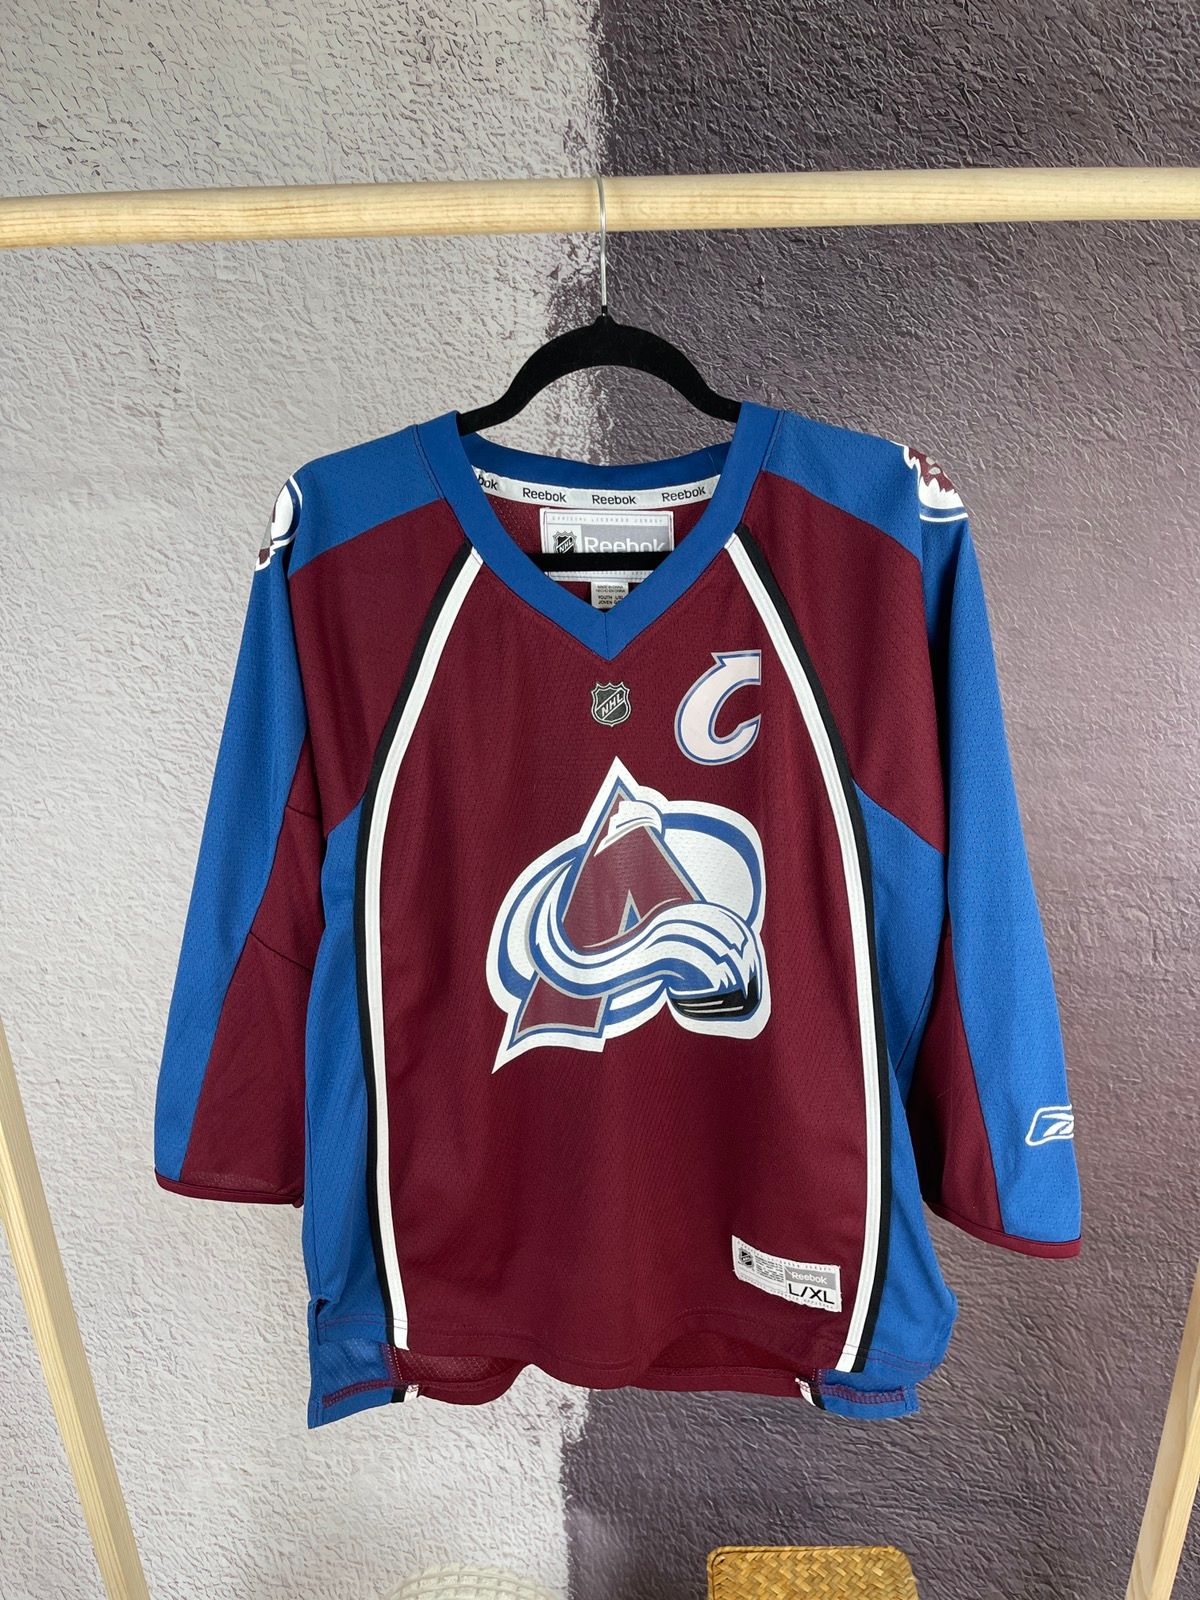 Reebok CCM Colorado Avalanche NHL Ryan Smyth Hockey Jersey Size YOUTH L/XL